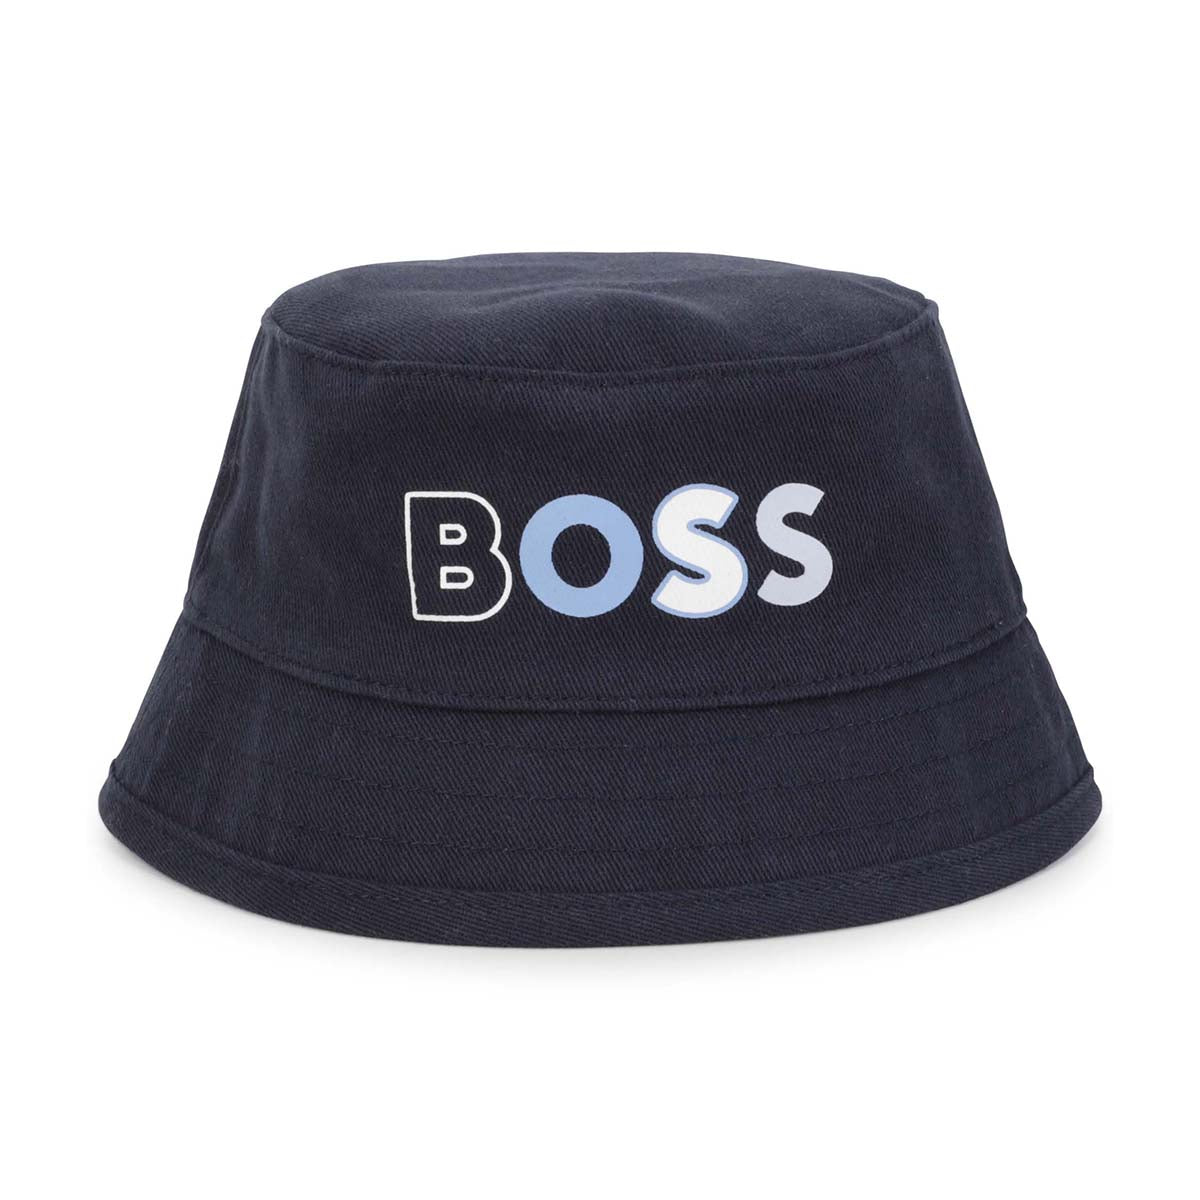 כובע דלי BOSS NB הדפס לוגו לתינוקות